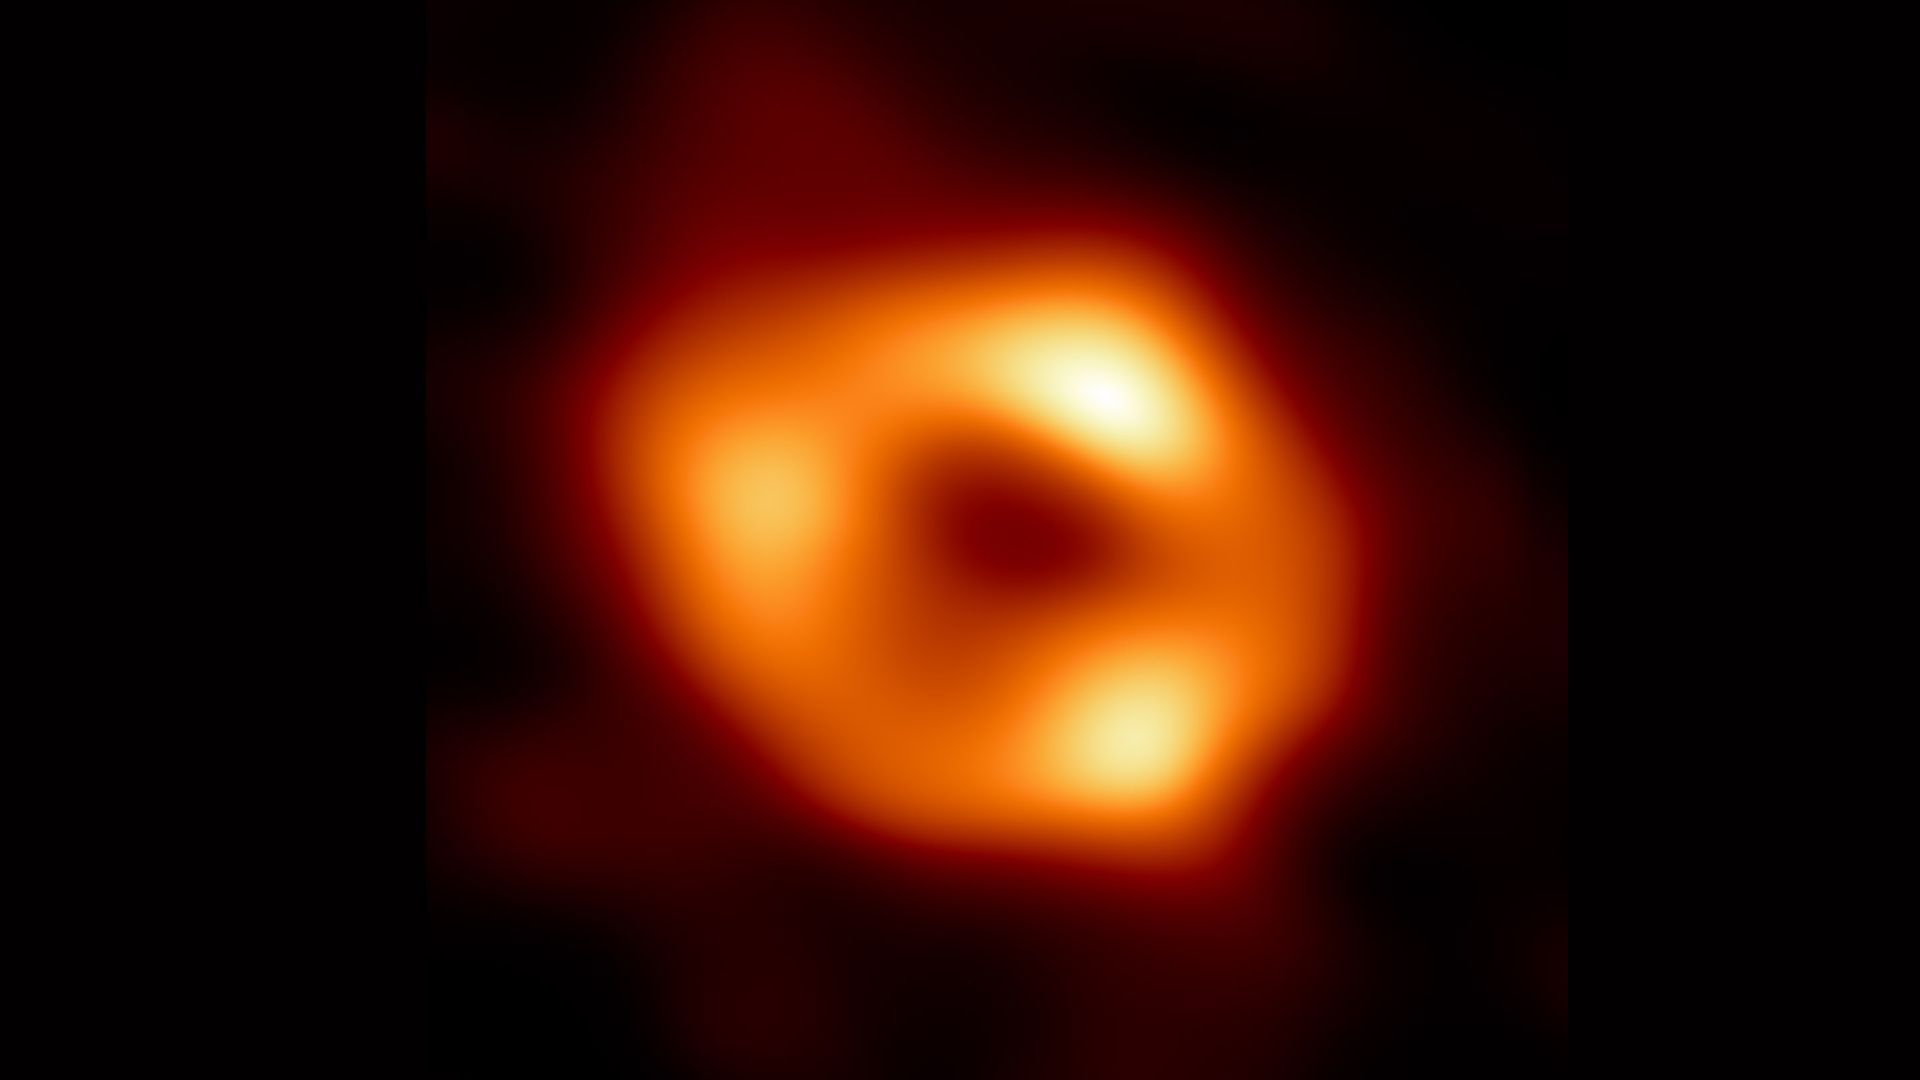 Il buco nero supermassiccio al centro della nostra galassia, la Via Lattea, è raffigurato per la prima volta